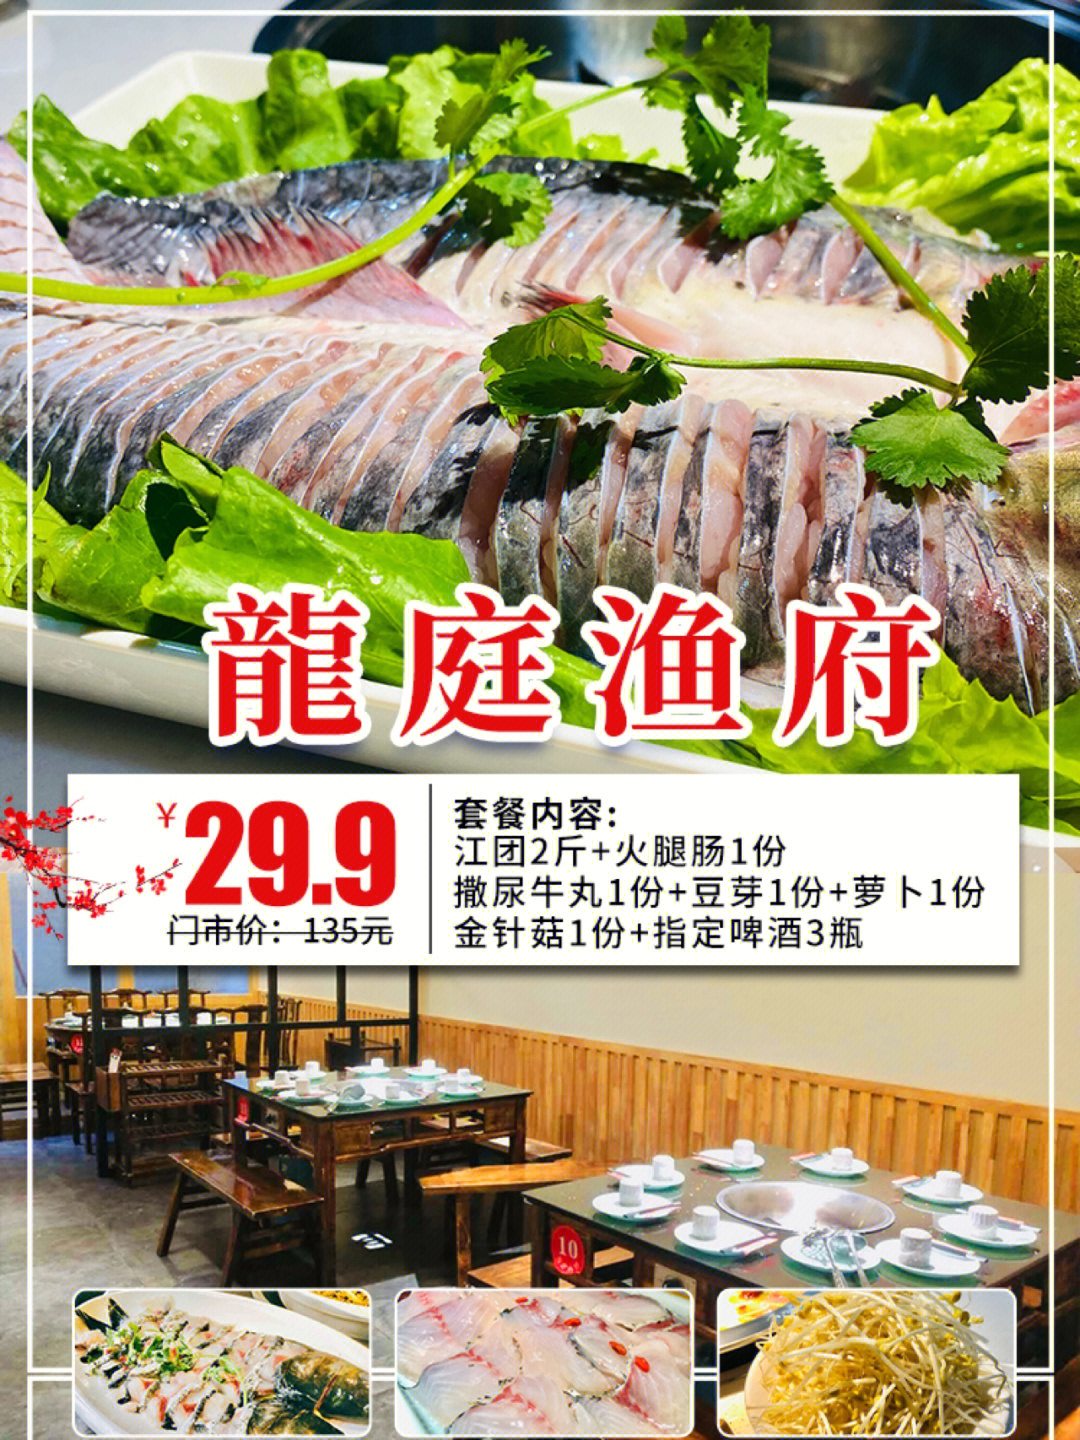 汉中三味渔府总店图片